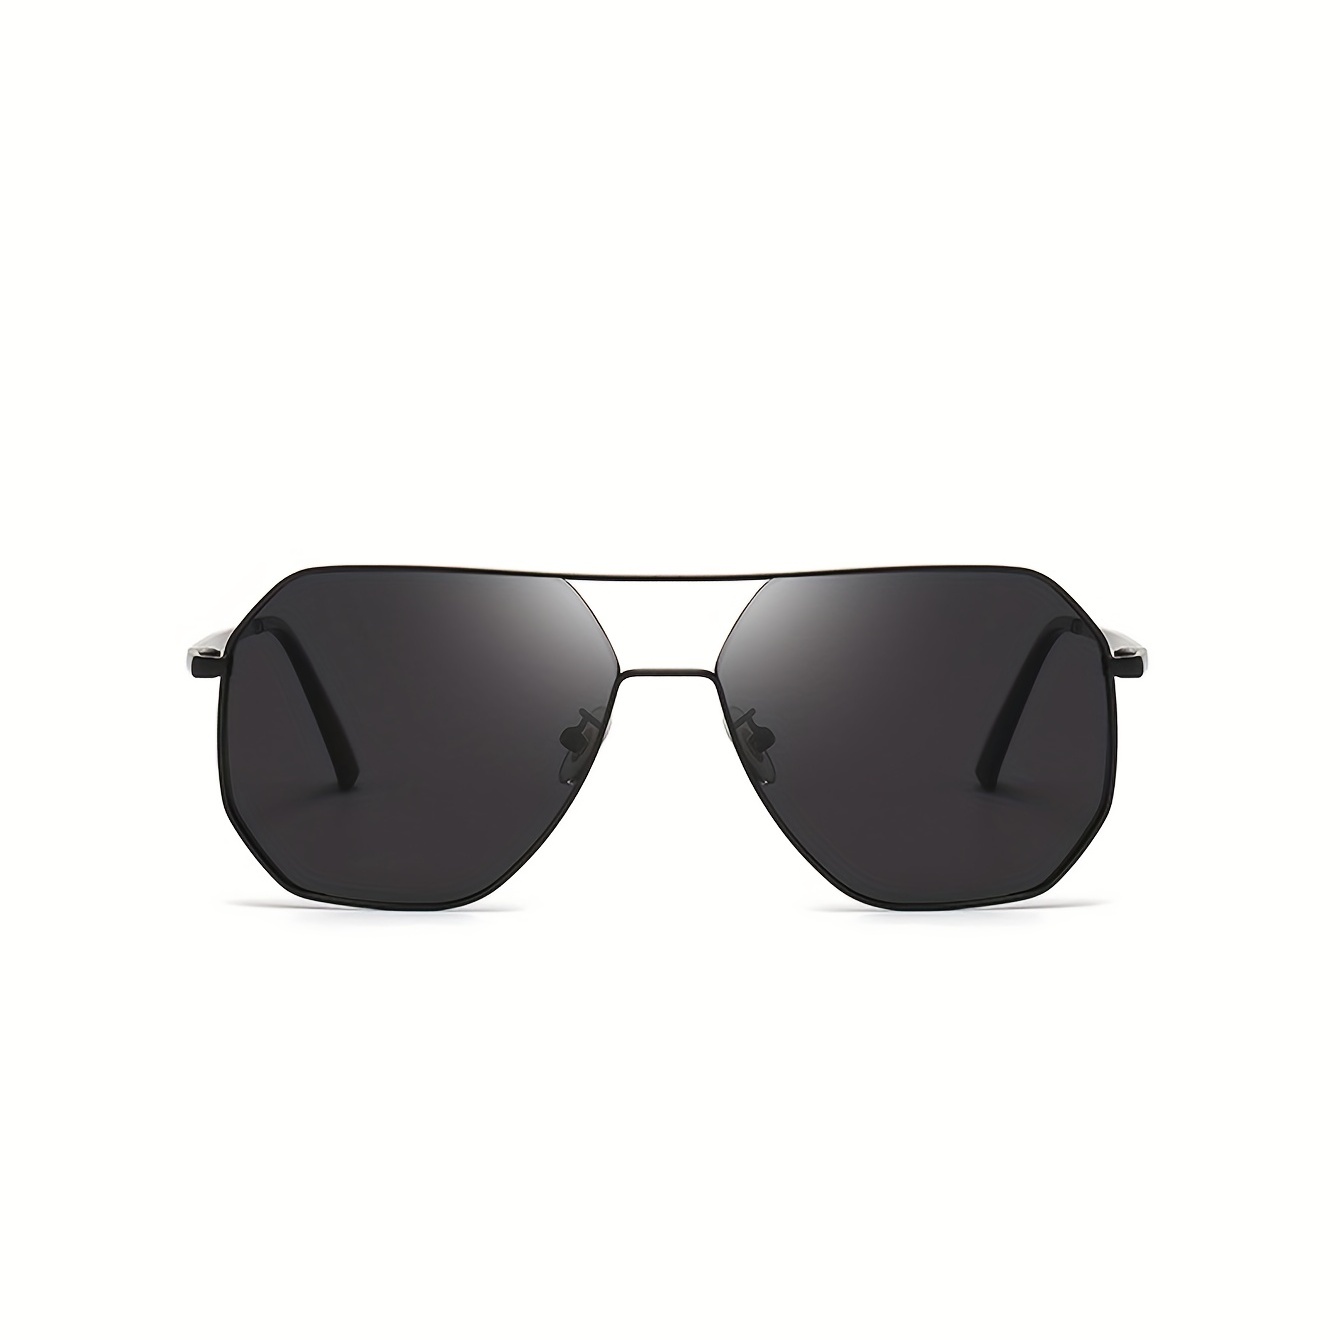 – Geometric Polarized Sunglasses for Men – Nylon Lenses, Lightweight